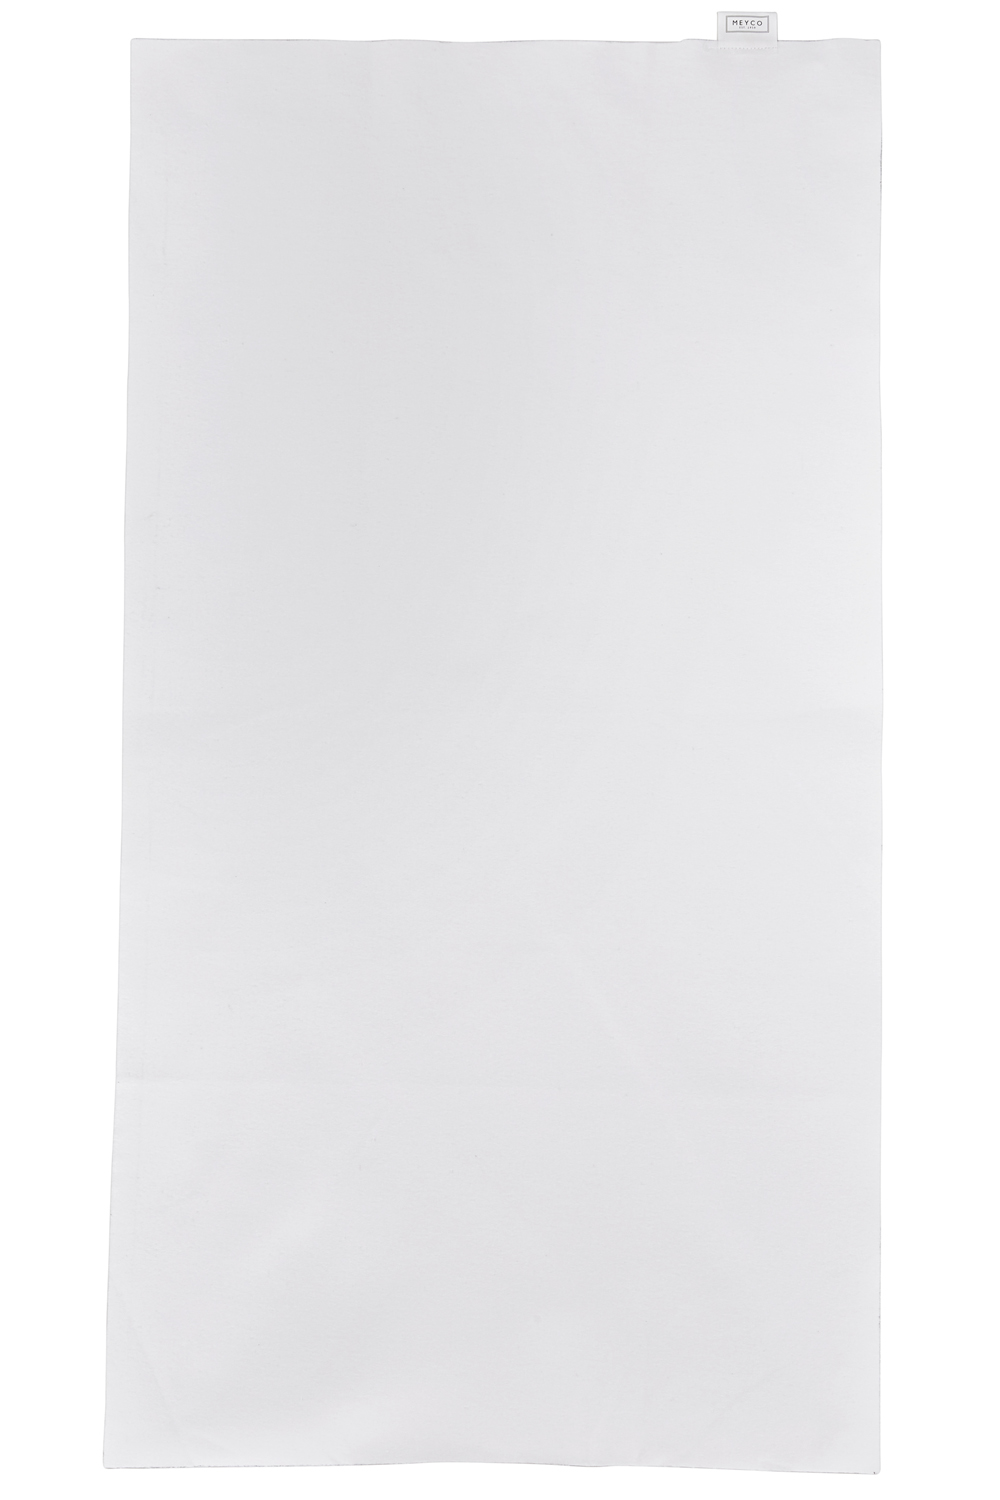 Bedzeil juniorbed - white - 75x100cm